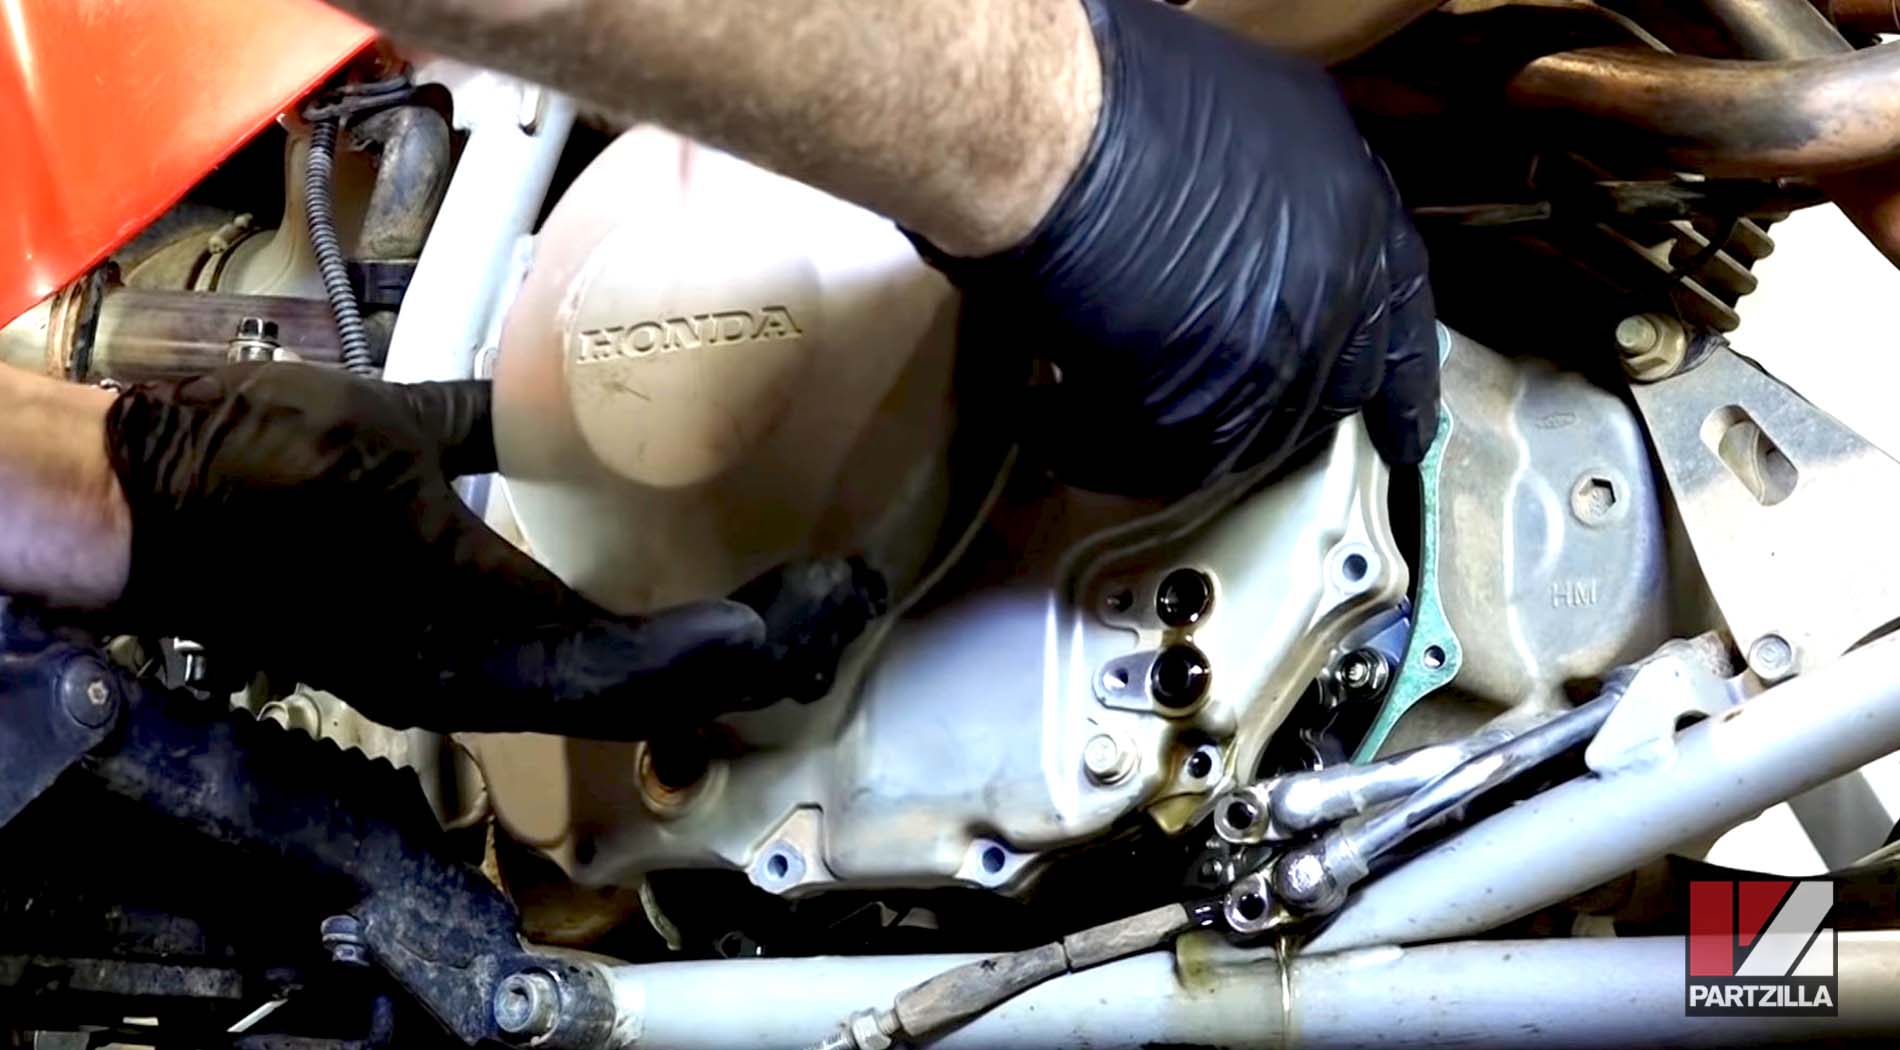 Honda TRX400 clutch cover removal